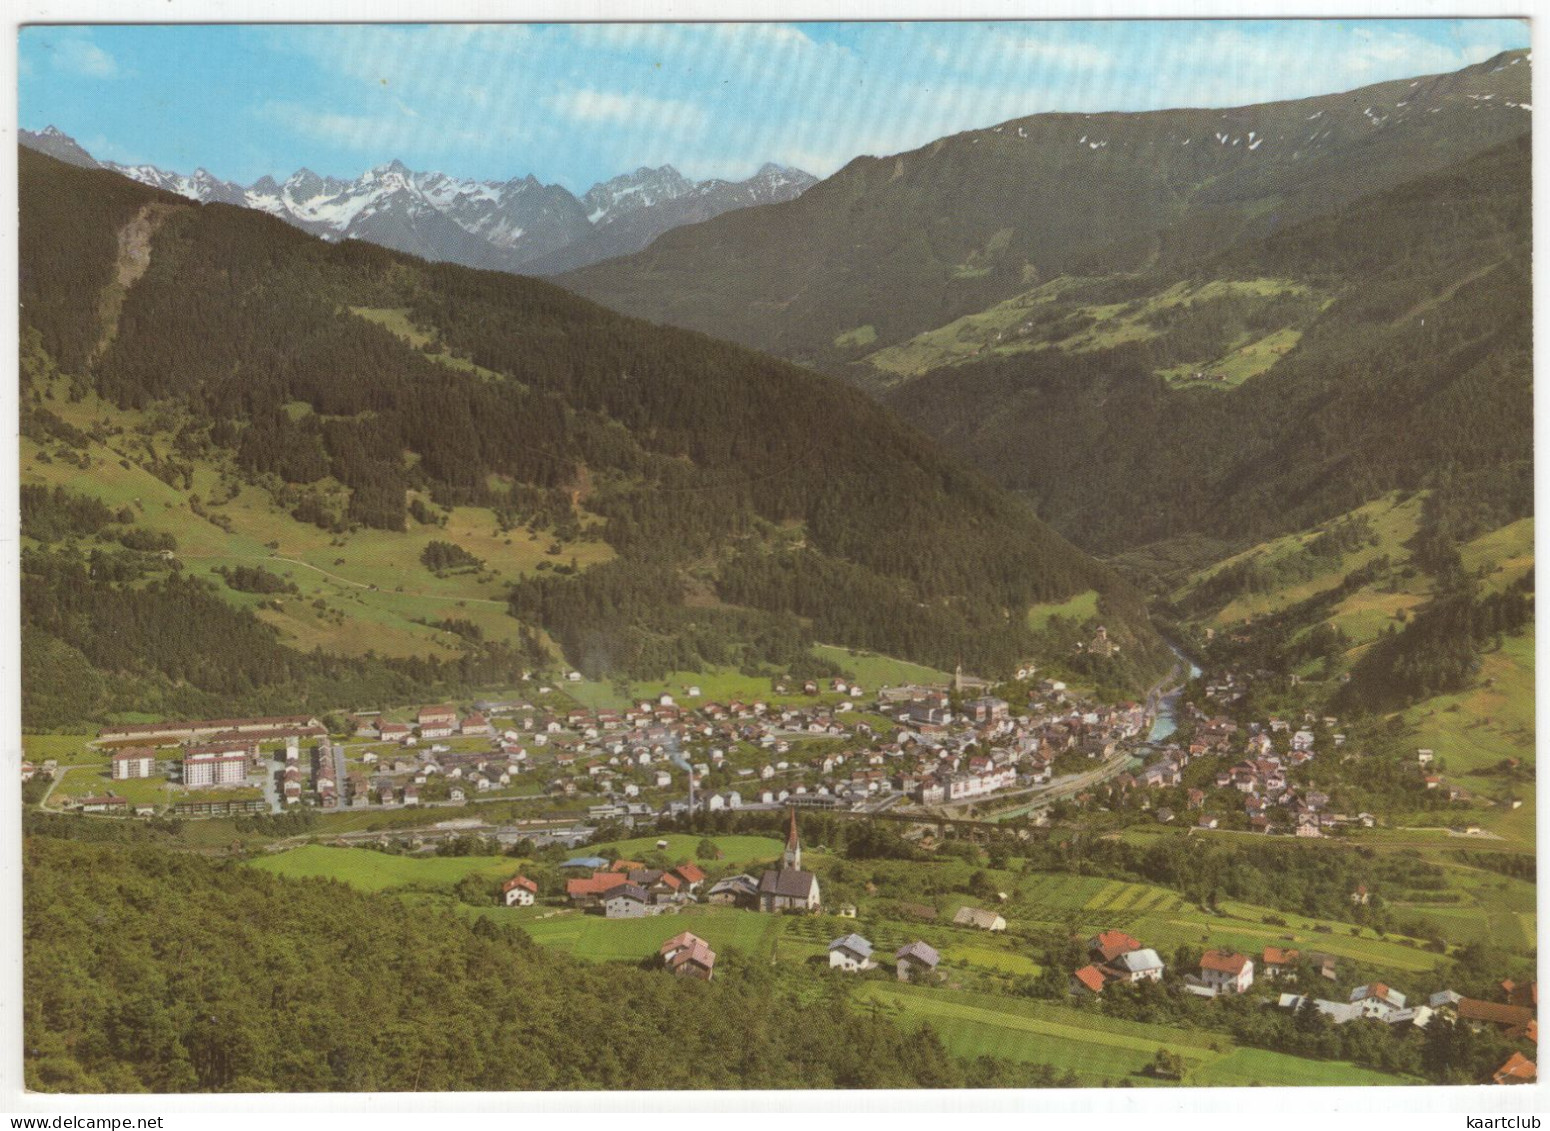 Landeck 816 M In Tirol -  (Österreich/Austria) - 1972 - Landeck